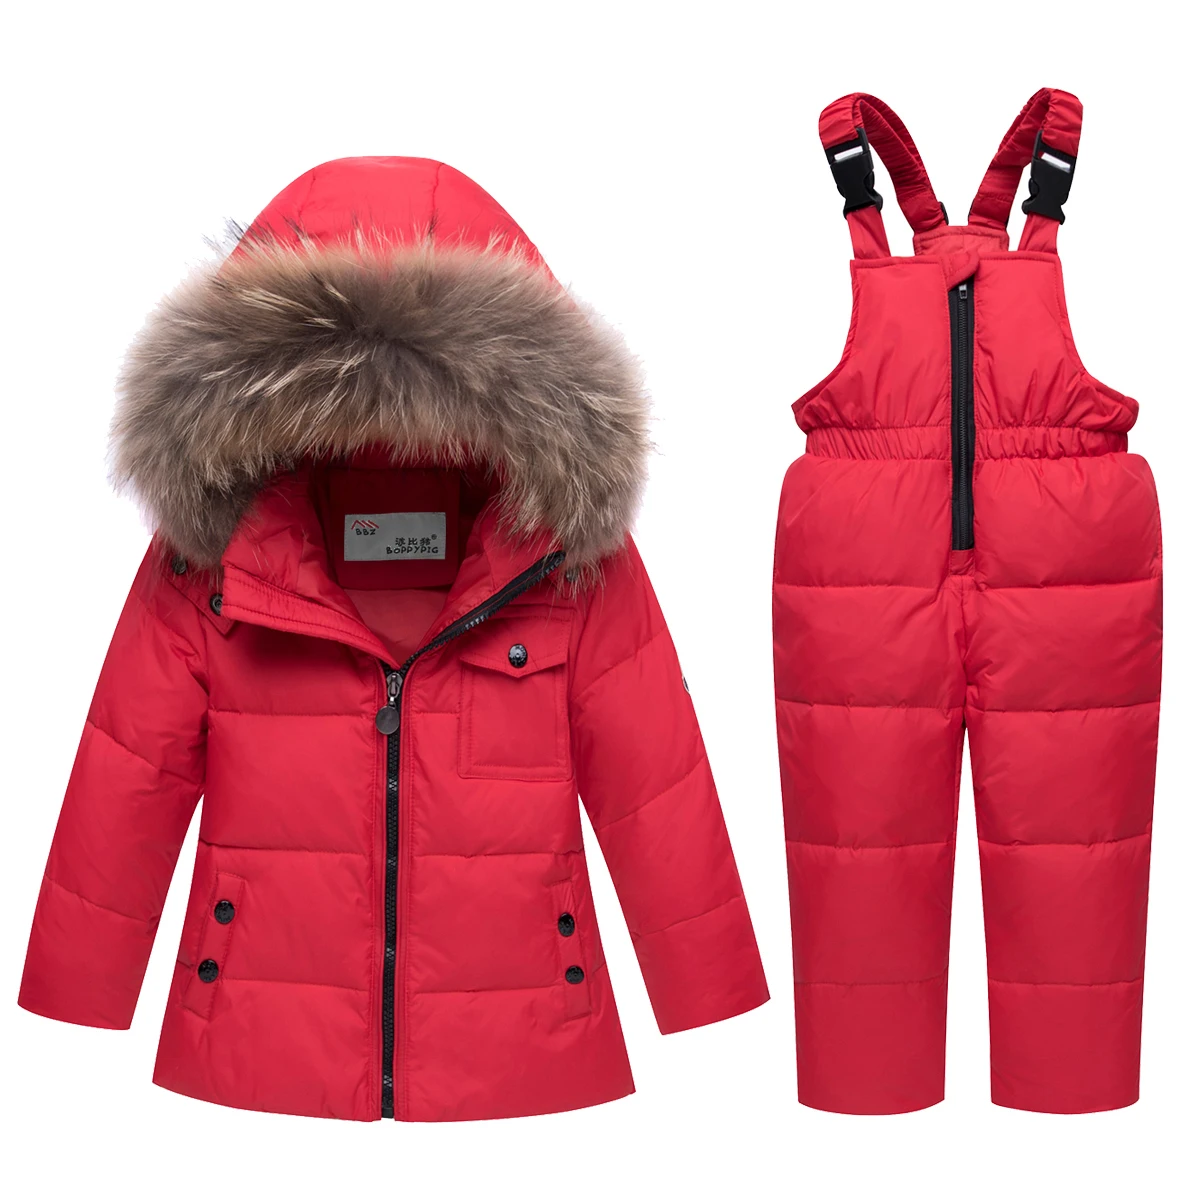 Dollplus/ г. Зимние костюмы для девочек и мальчиков, комплекты одежды для детей Детские Зимние куртки+ комбинезон, штаны комплект из 2 предметов, верхняя одежда с капюшоном, костюм - Цвет: Красный